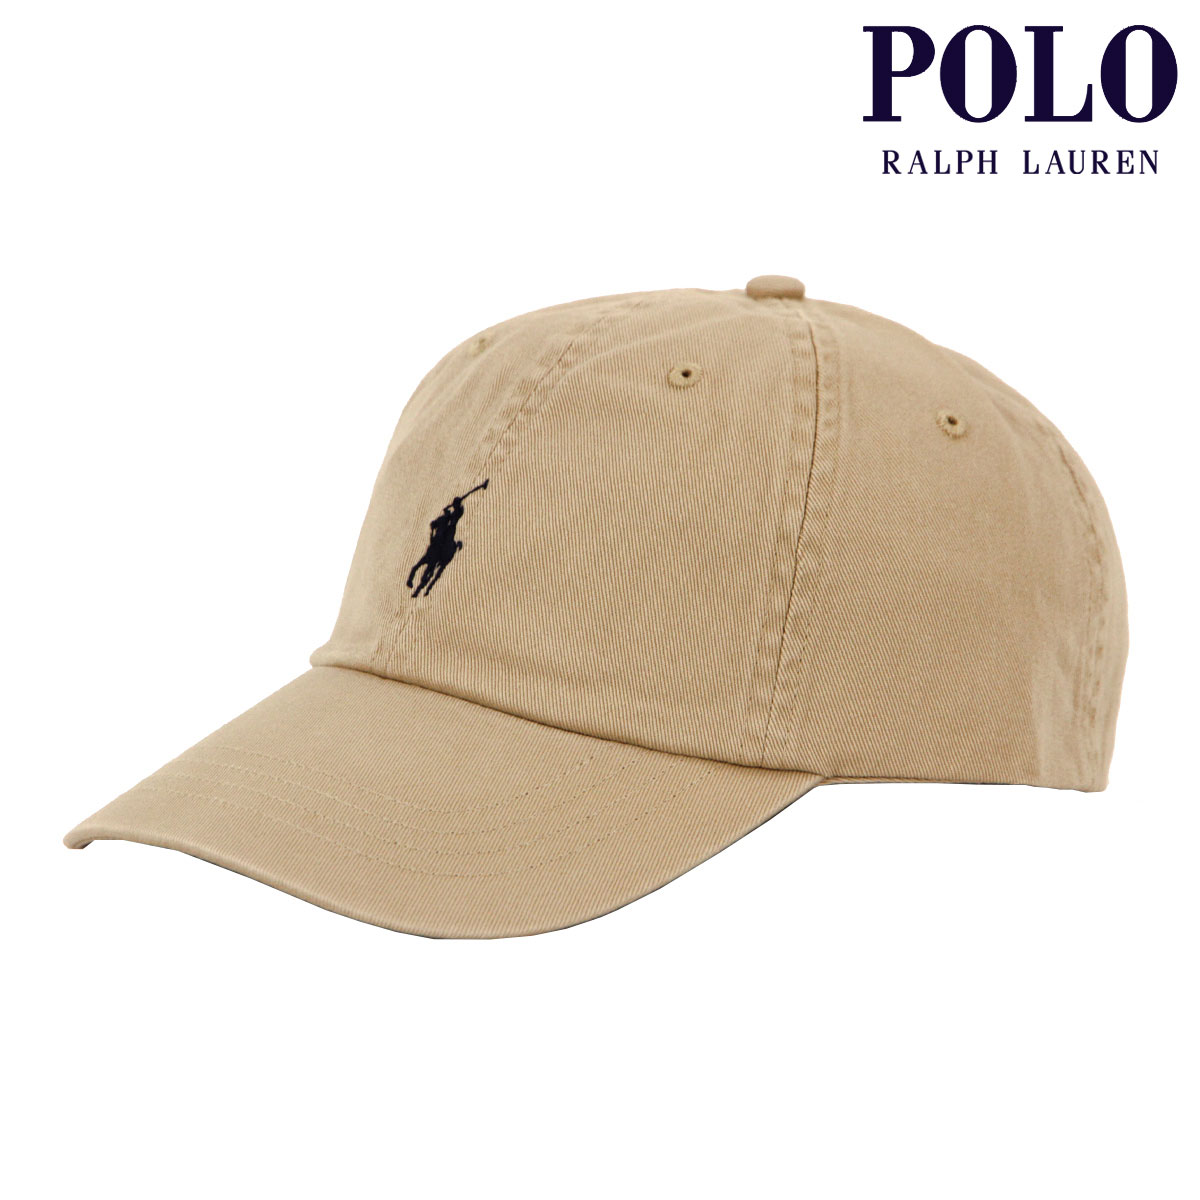 ポロ ラルフローレン メンズ レディース キャップ 正規品 POLO RALPH LAUREN 帽子 ロゴ ポニー CLASSIC SPORTS CAP BEIGE 710548524